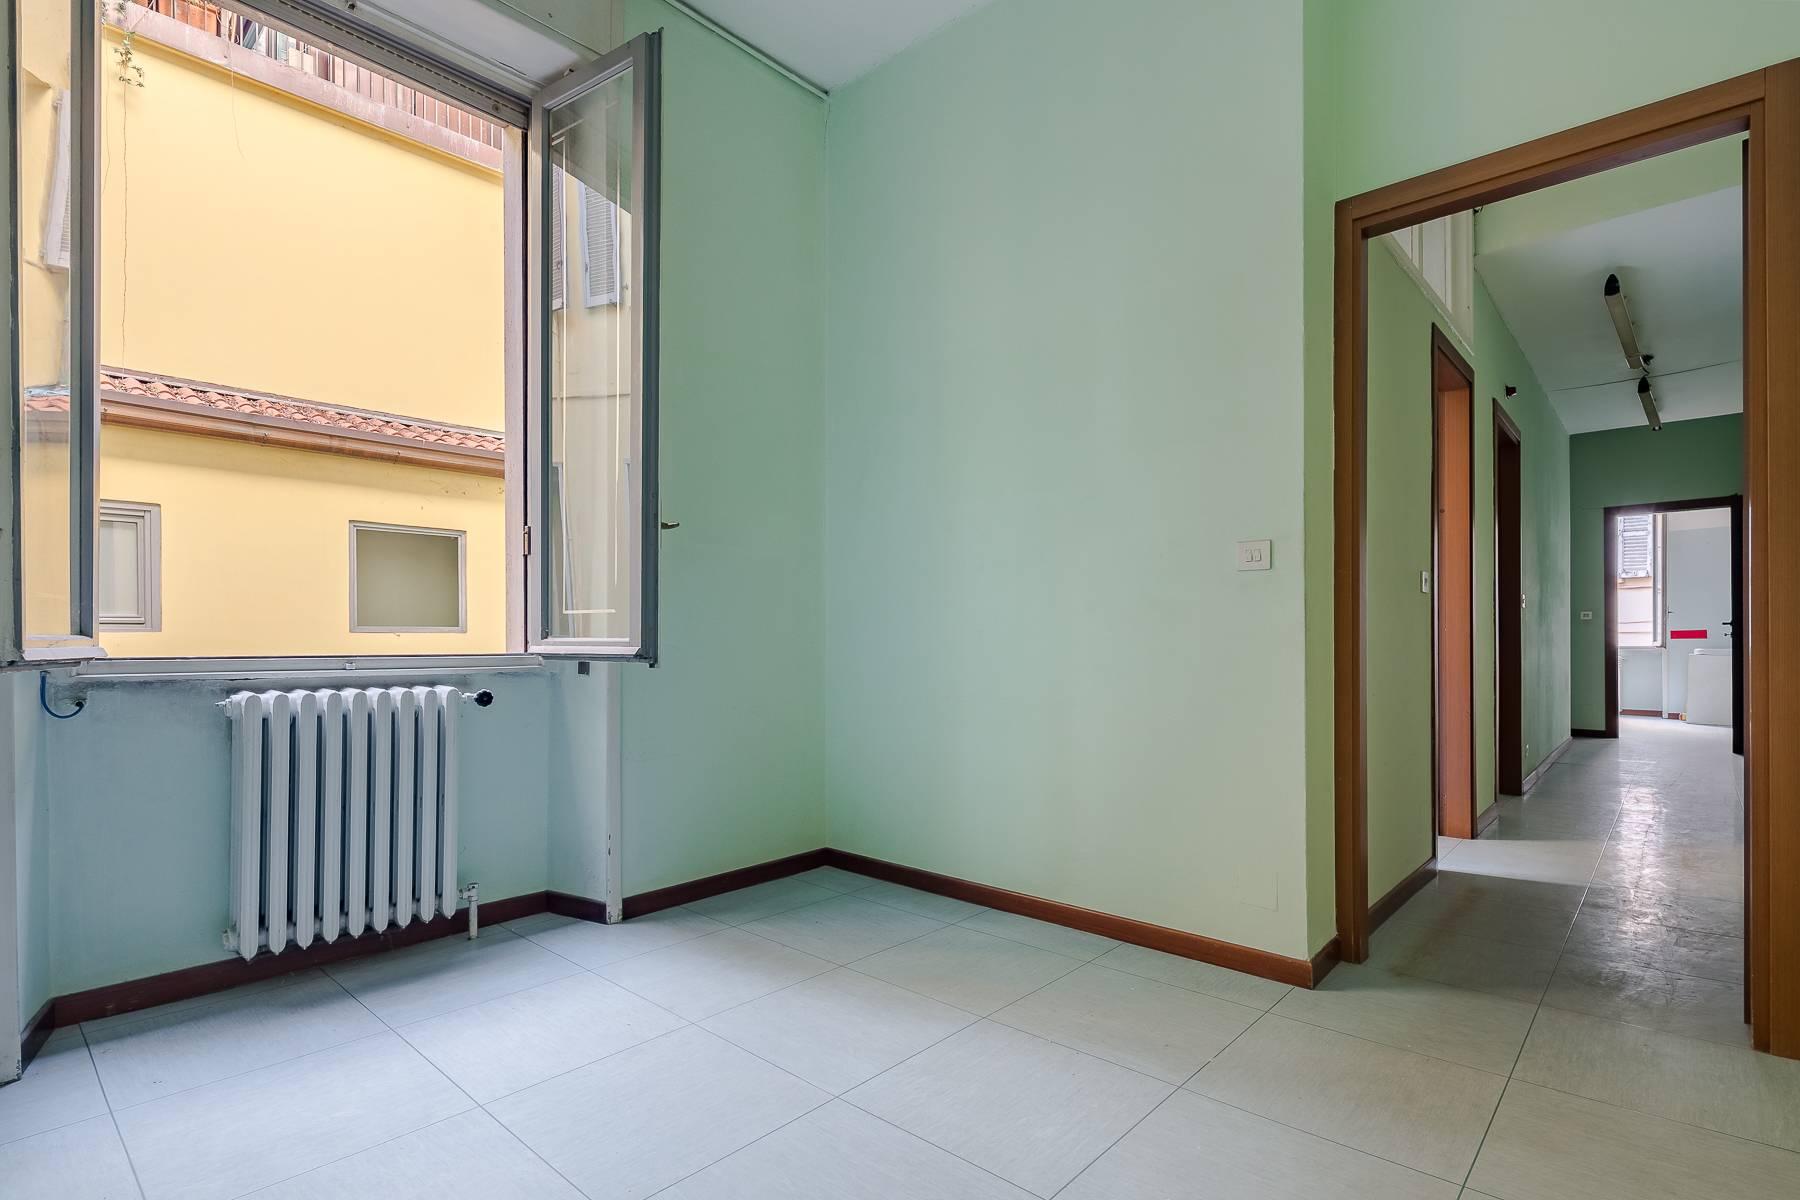 Apartment in Corso Venezia - 11